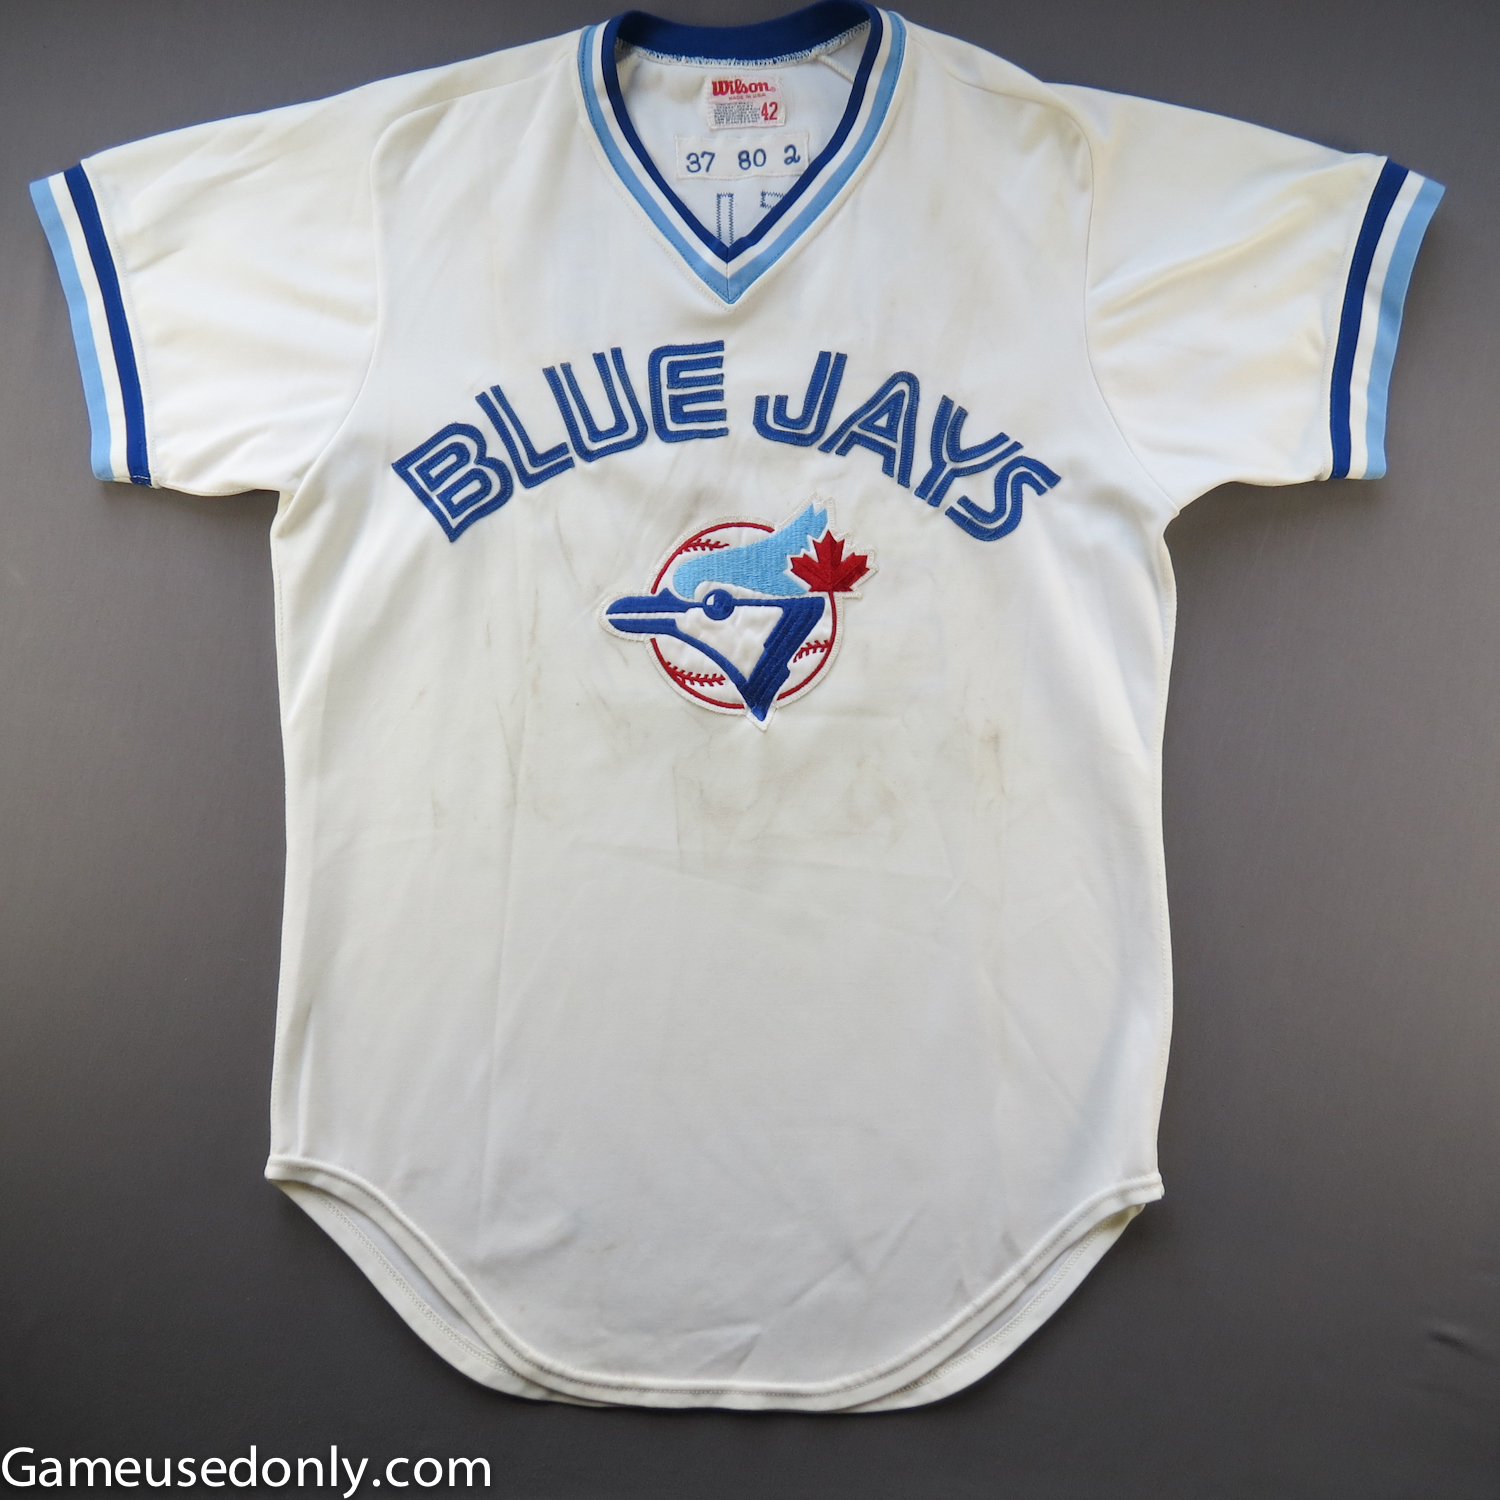 1977 blue jays jersey